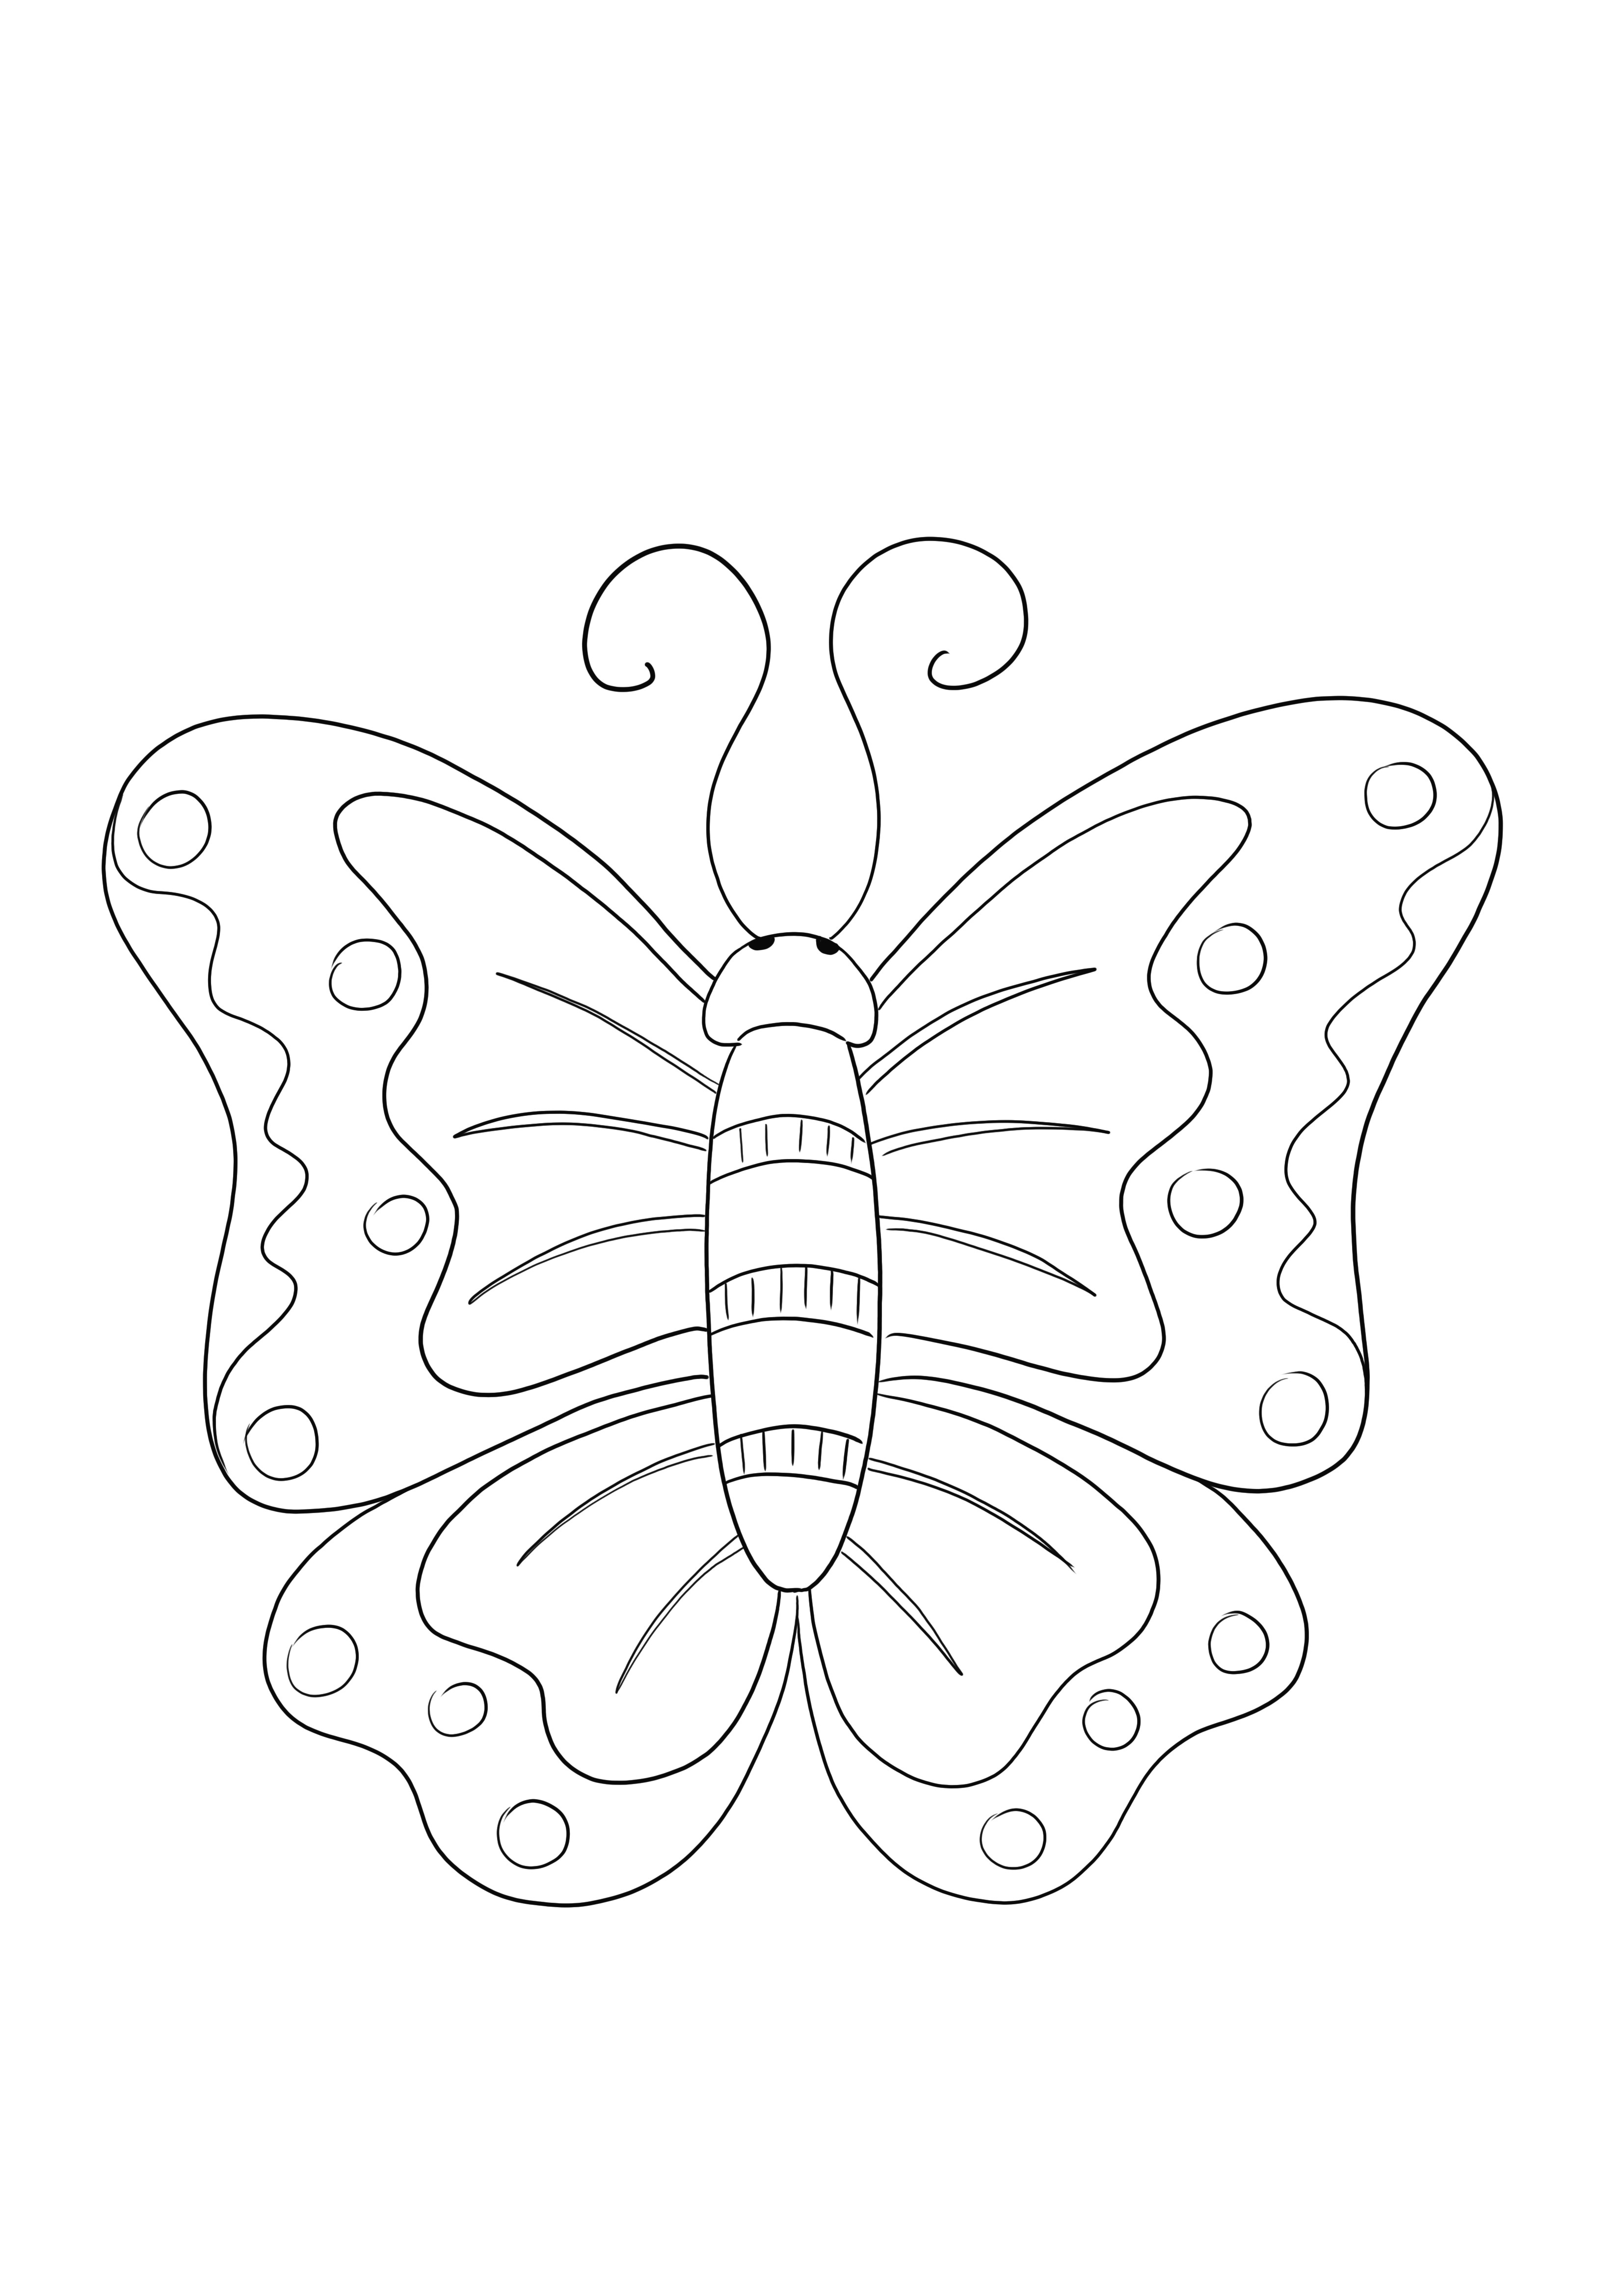 Hoja para colorear gratis de Mariposa-simplemente para imprimir y usar para que los niños aprendan sobre insectos